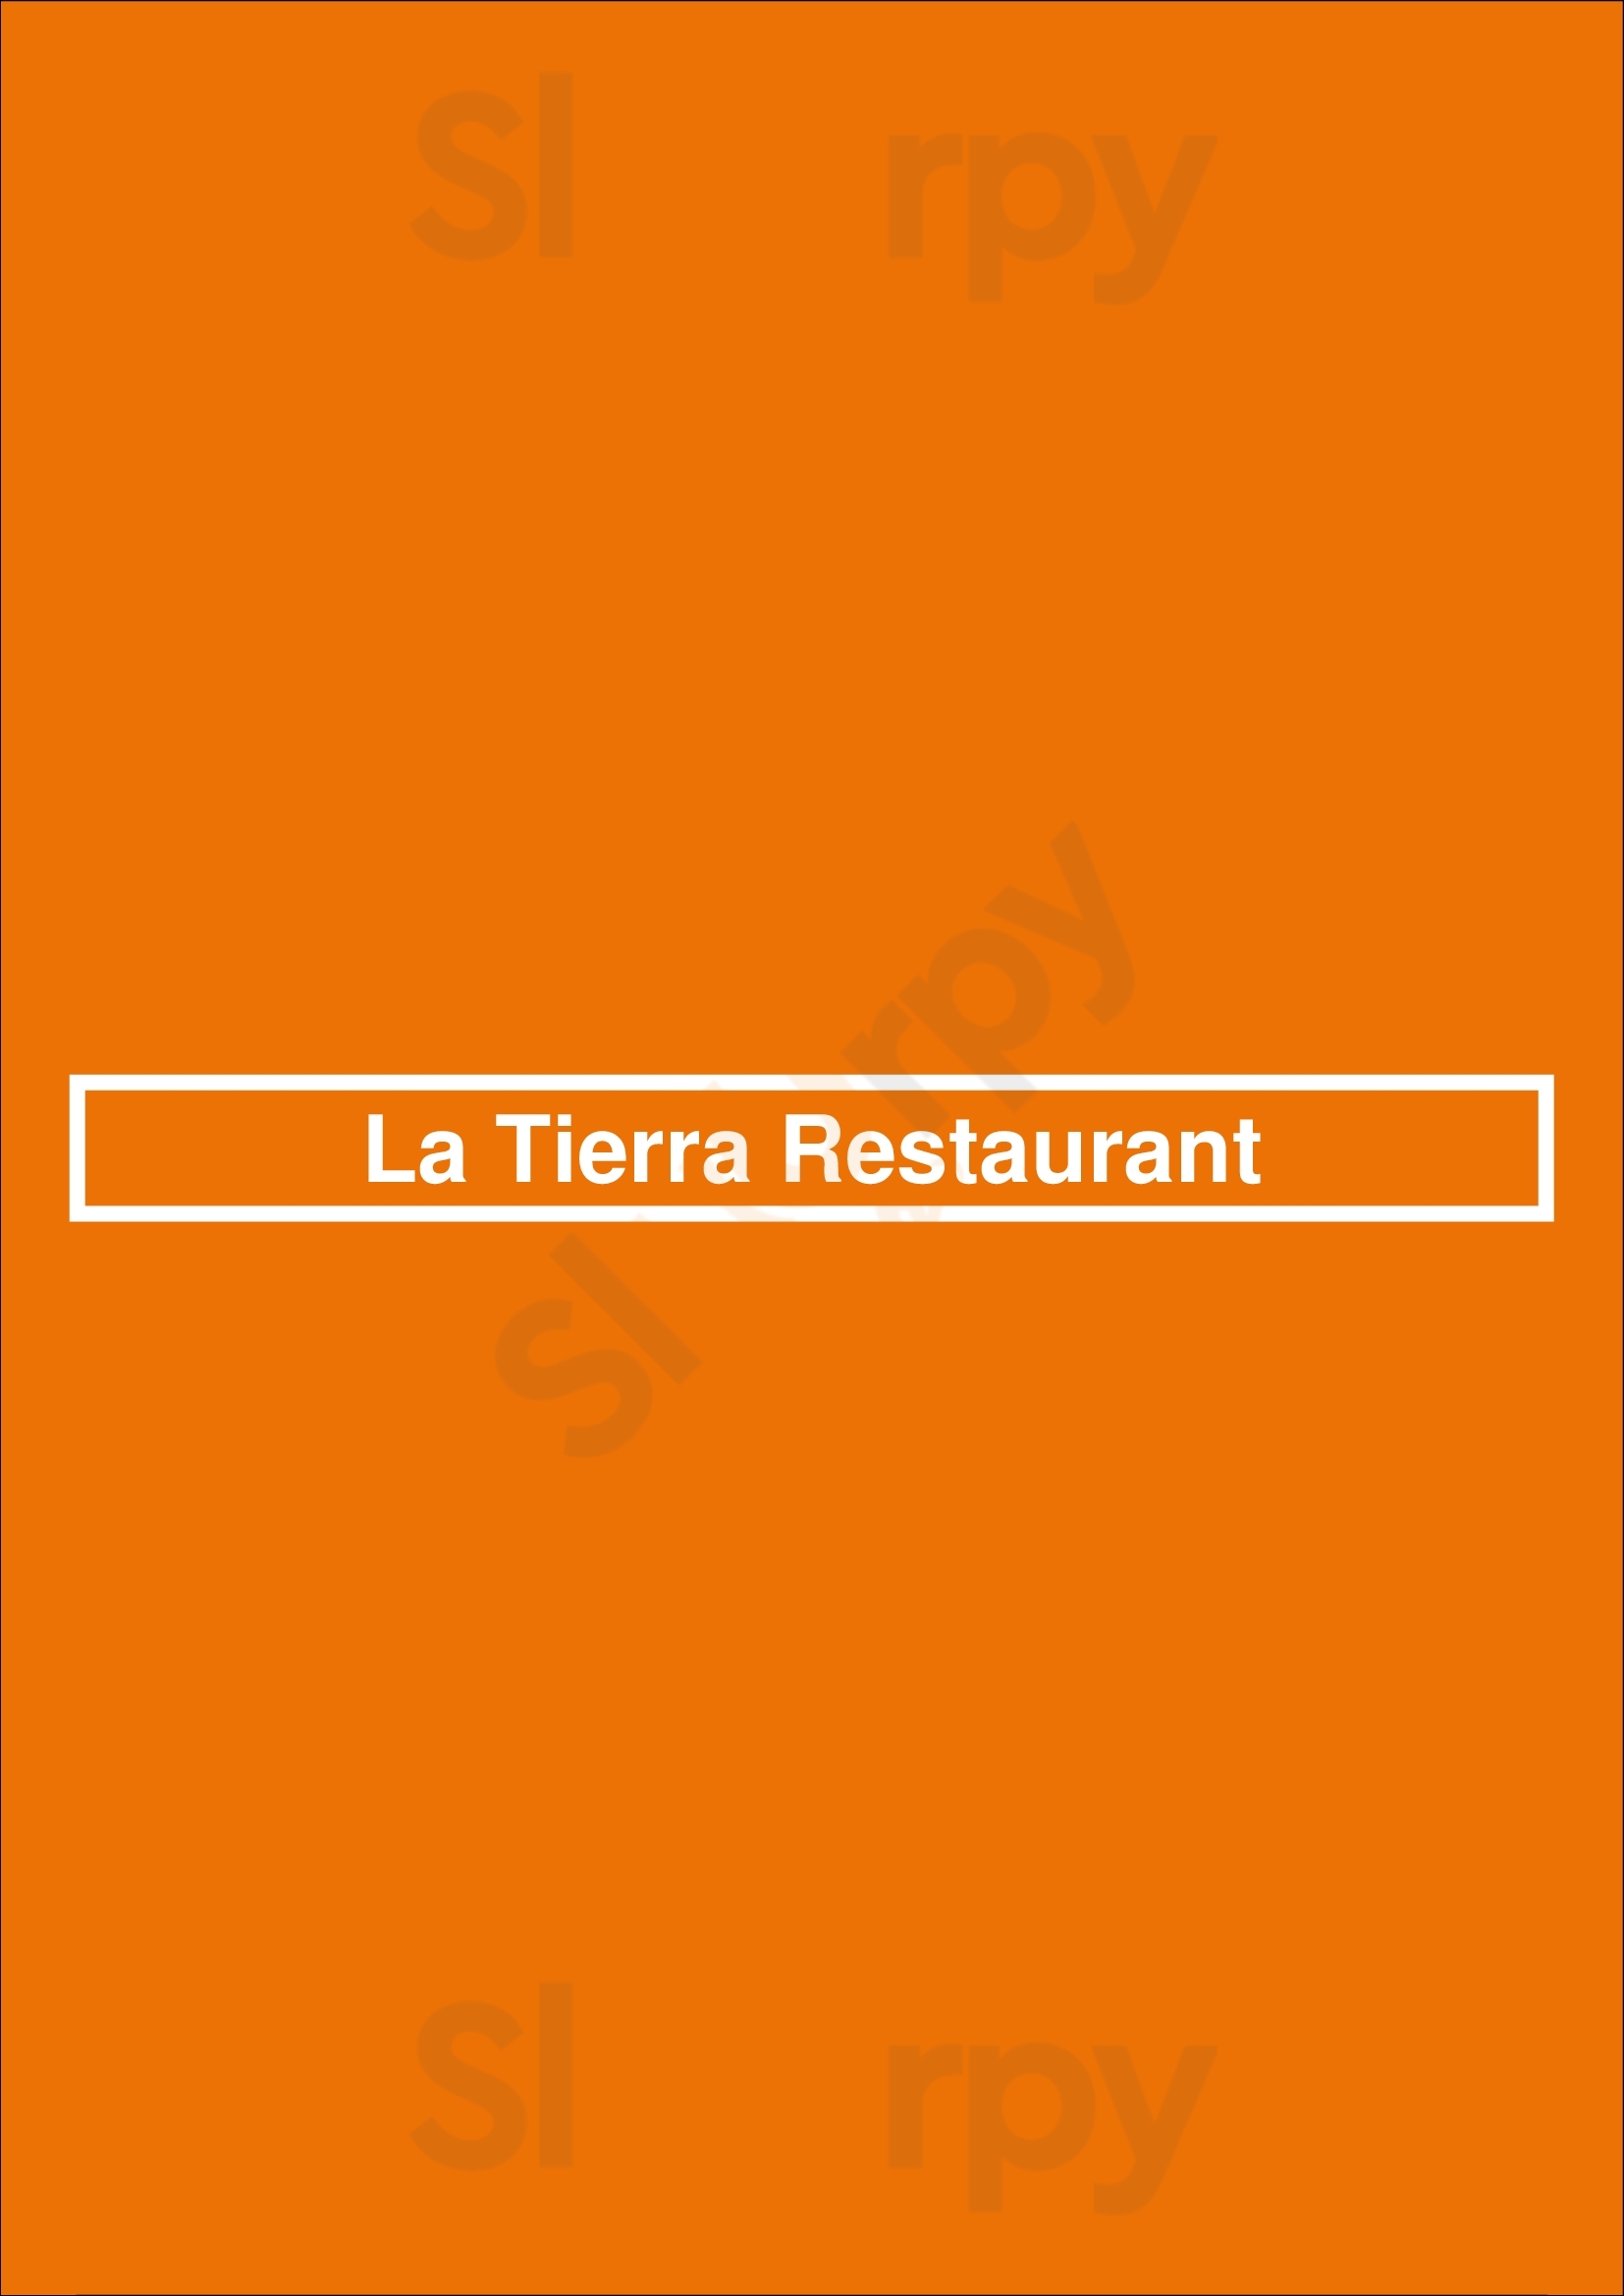 La Tierra Restaurant Albury Menu - 1